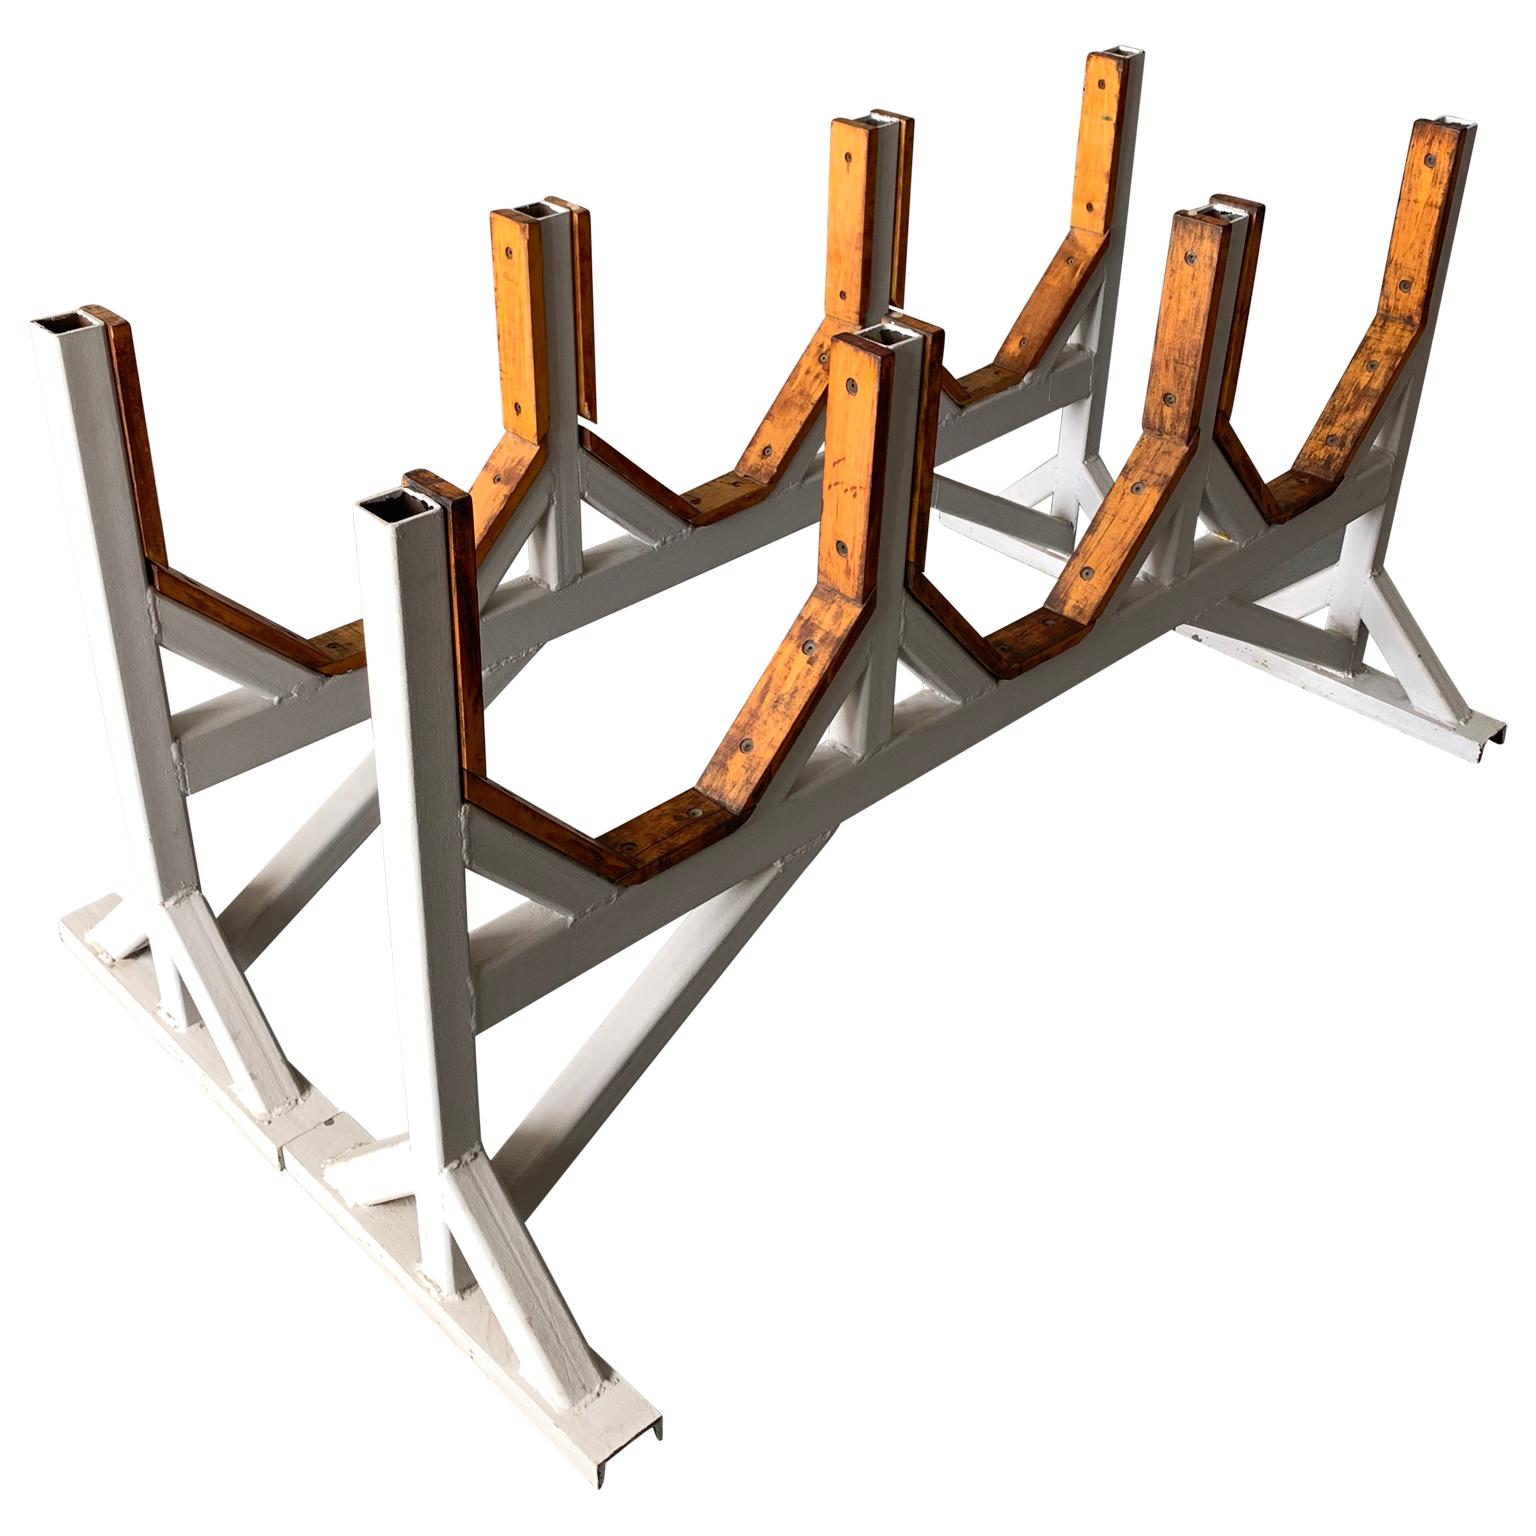 Schwerlast-Tischgestelle aus hellgrau lackiertem Metall und Holz

Die Farbe der Metallsockel kann gegen Aufpreis an die individuellen Bedürfnisse angepasst werden.
Die Glasplatte kann gegen einen Aufpreis individuell angepasst und direkt versandt